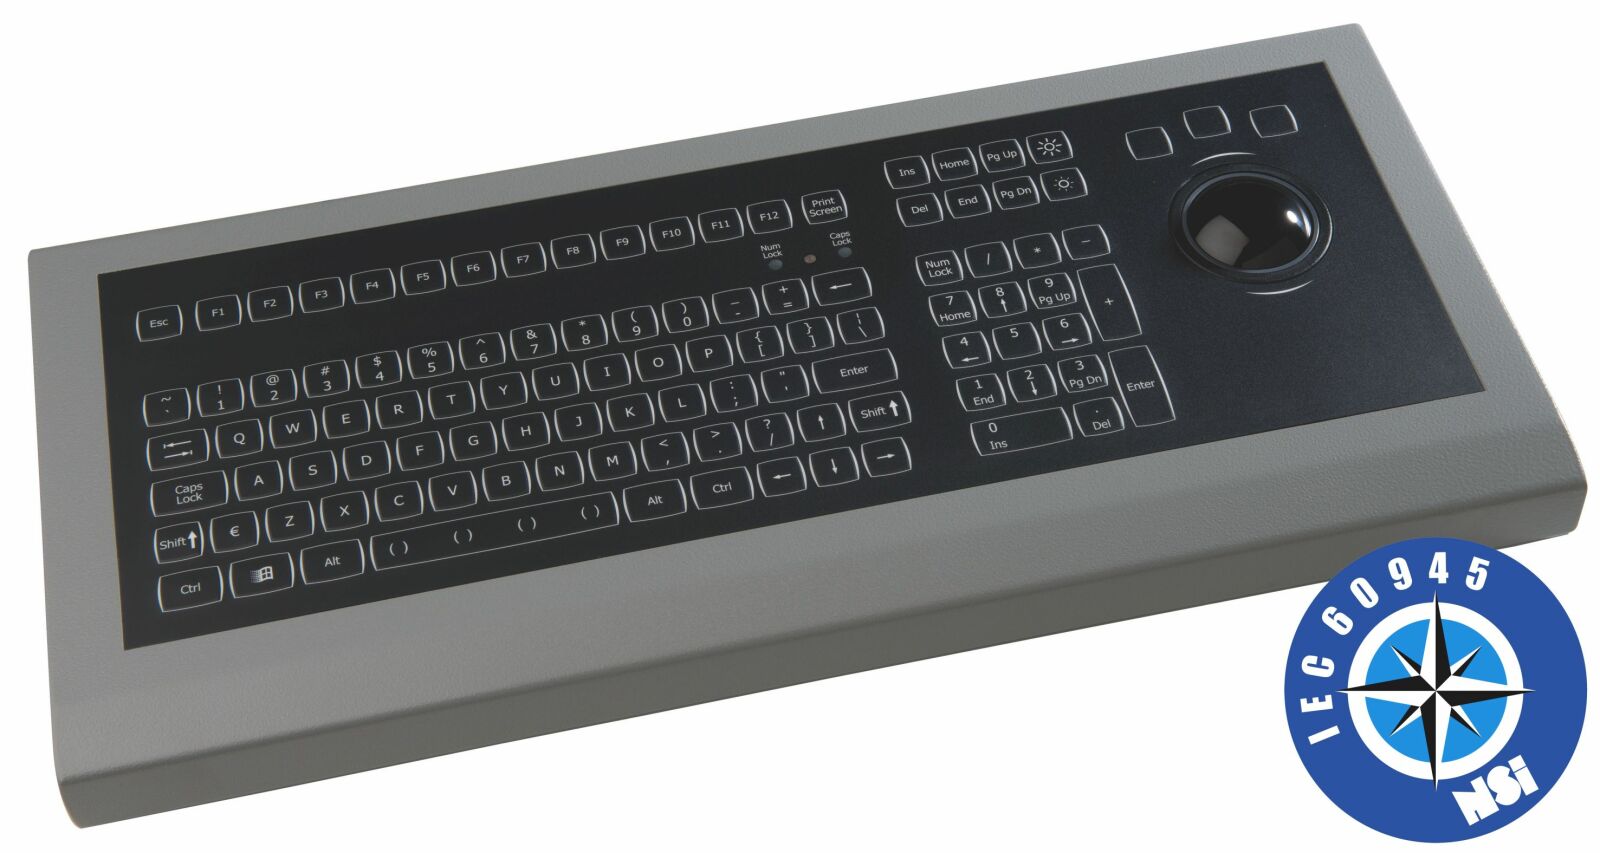 lighted keyboard for desktop